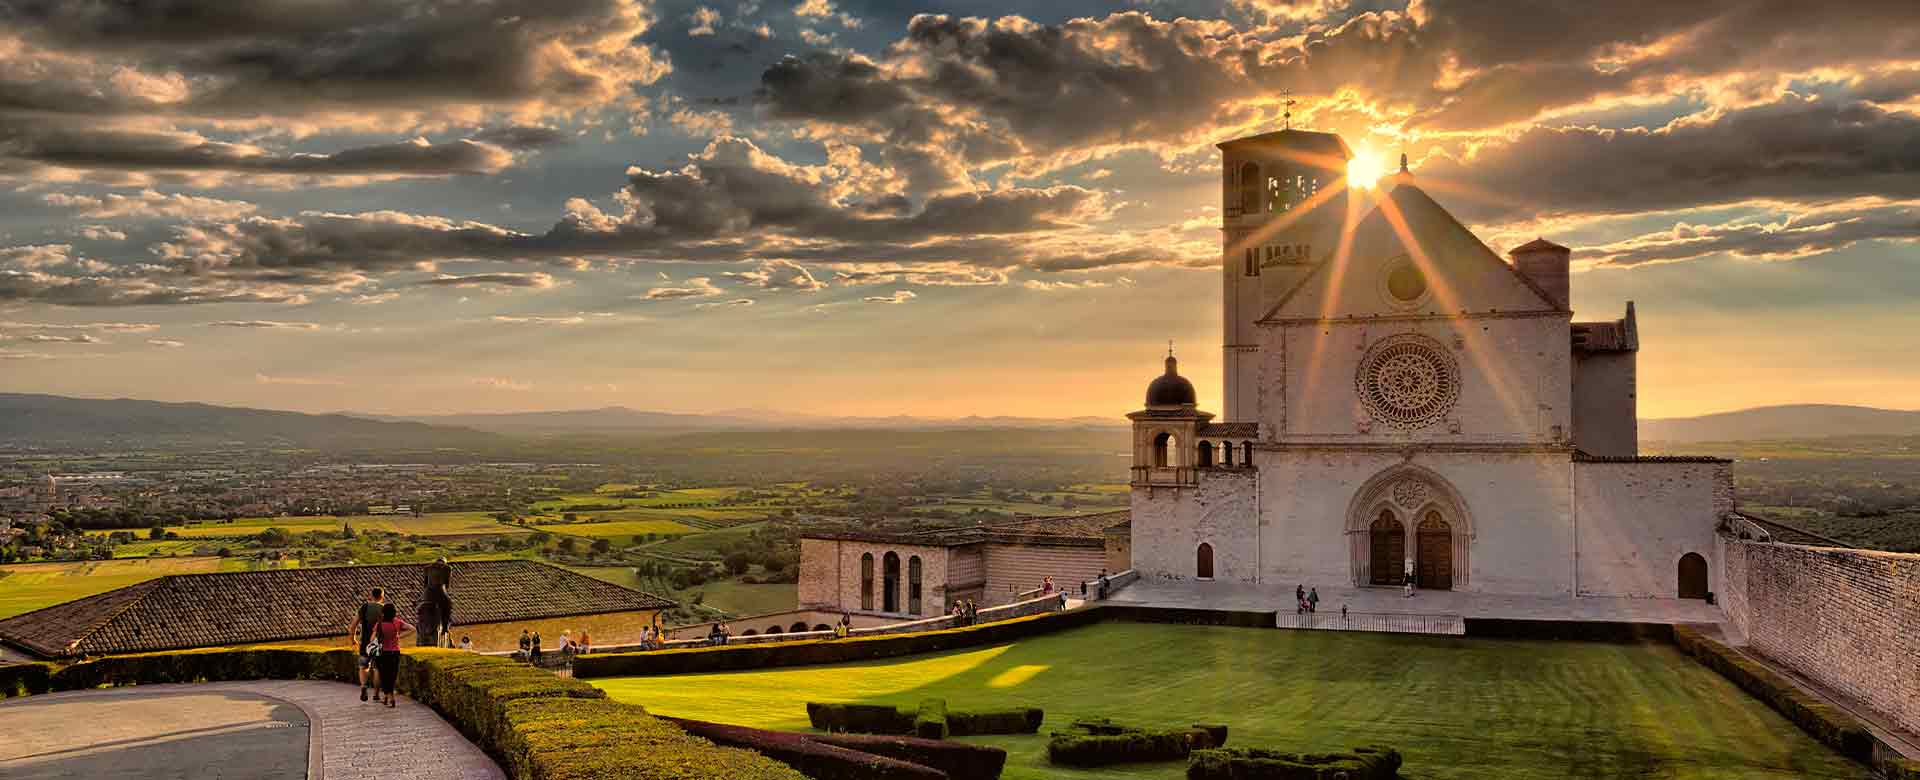 Veduta della basilica di San Francesco ad Assisi